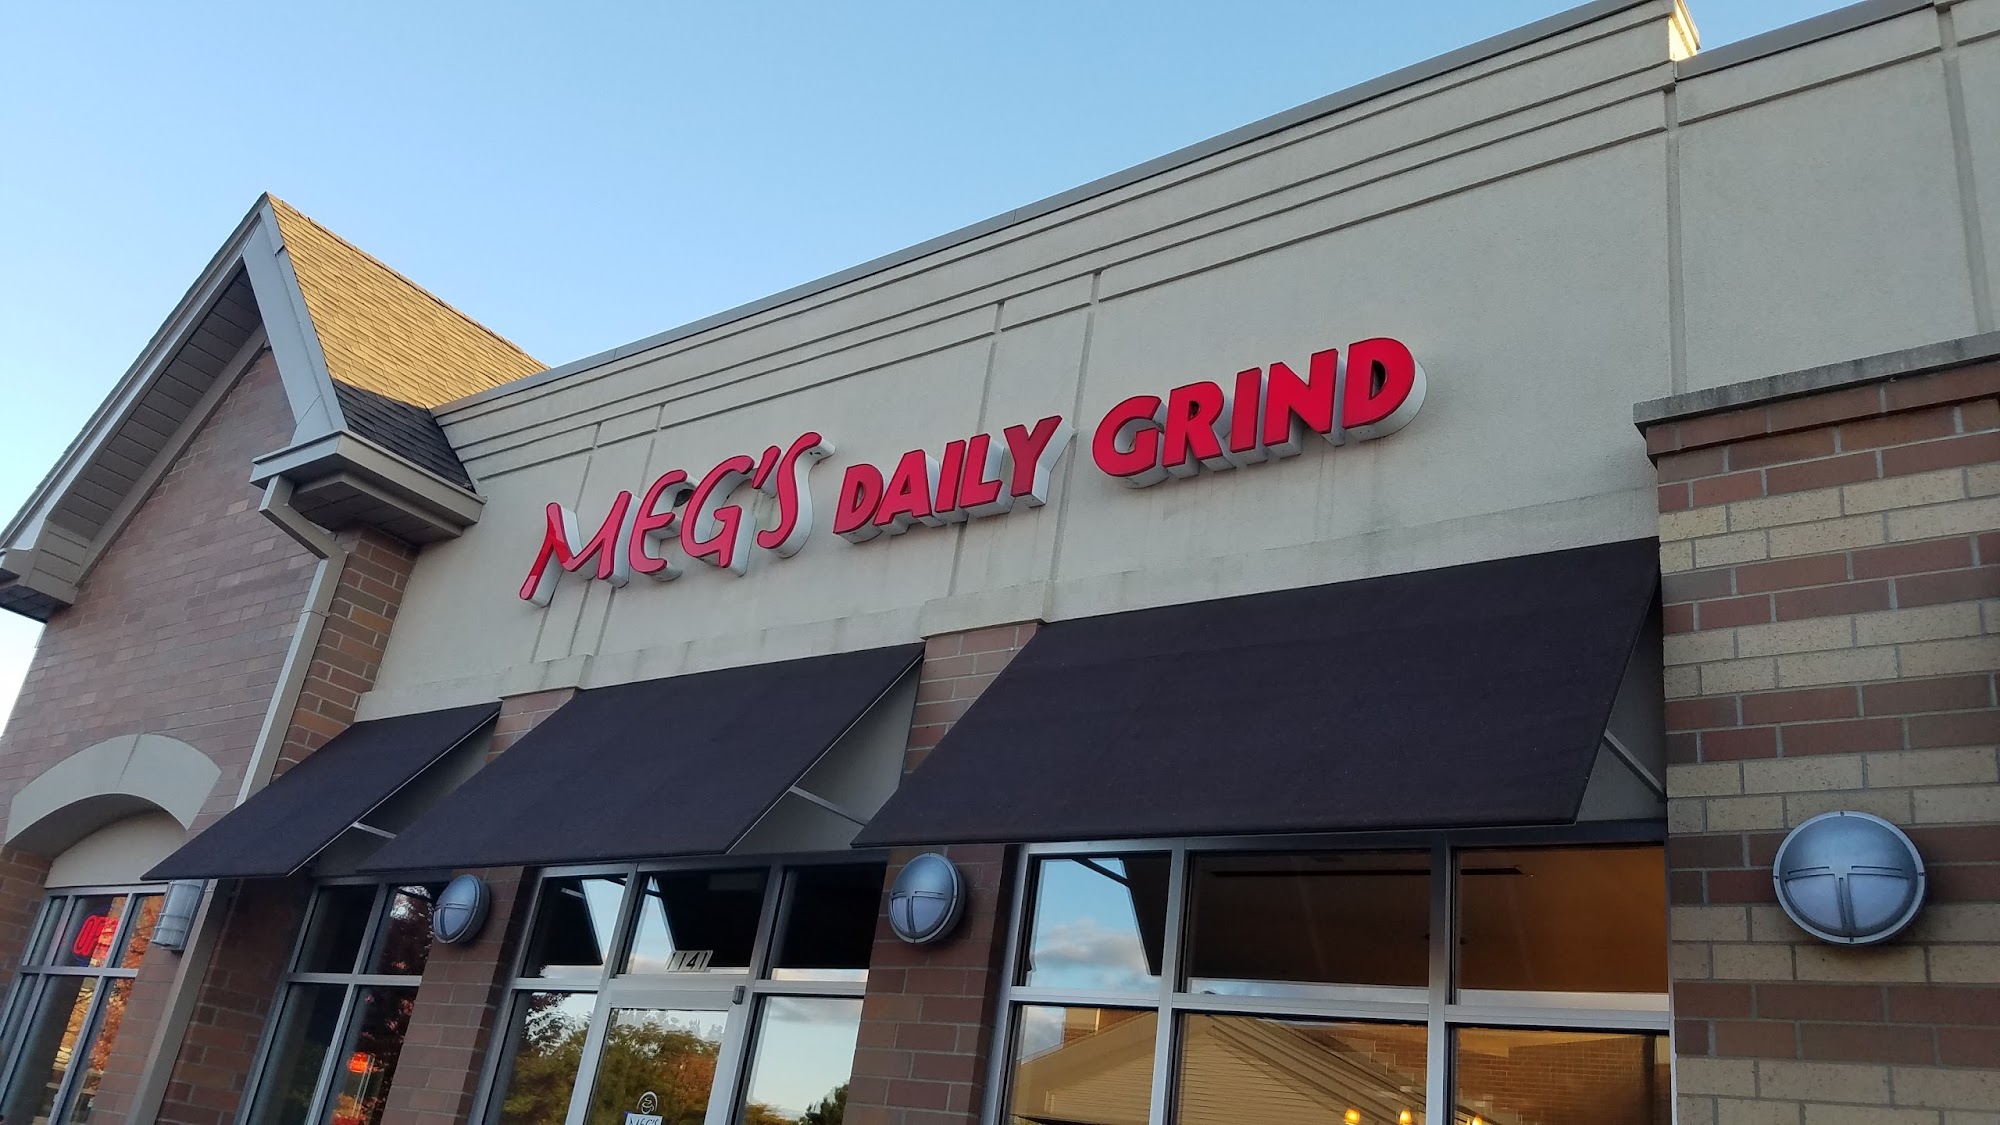 Meg's Daily Grind